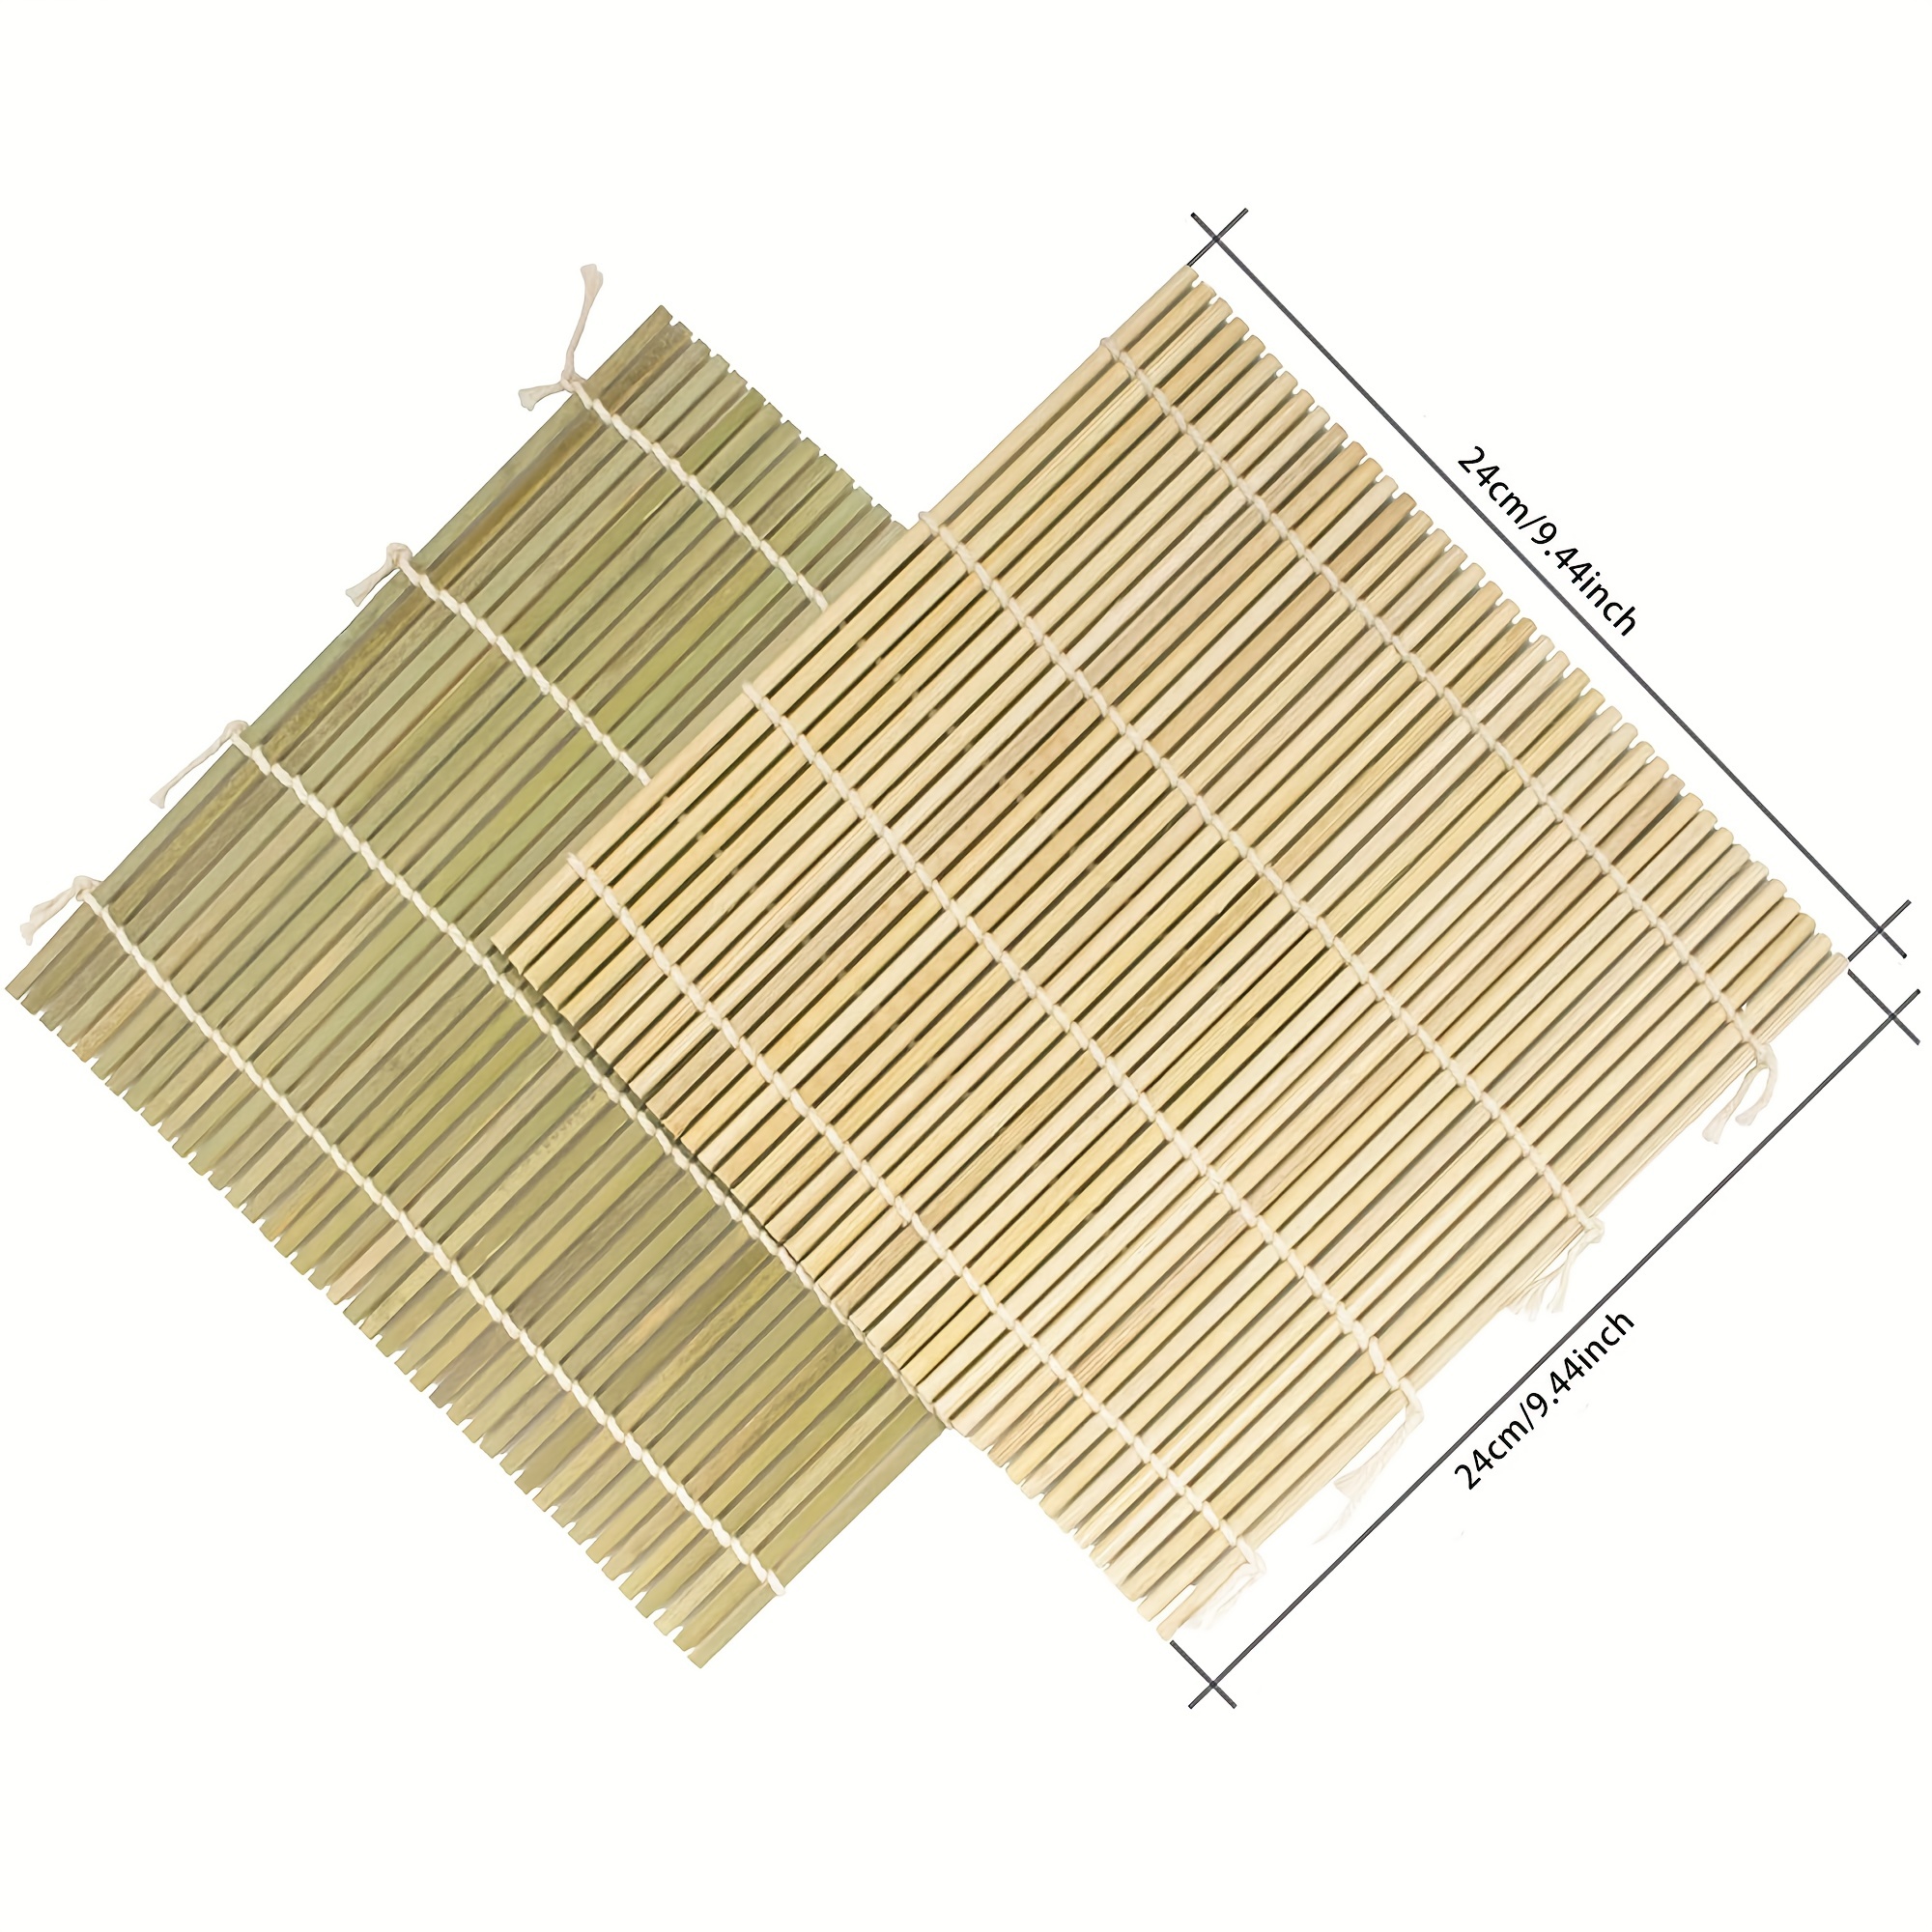 esmaklassiline bambusest sushi rullimismatt – 9,44 x 9,44 tolli – lihtne sushivalmistaja täiuslike rullide jaoks – sisaldab sushi bazookat ostke temu ja alustage säästmist